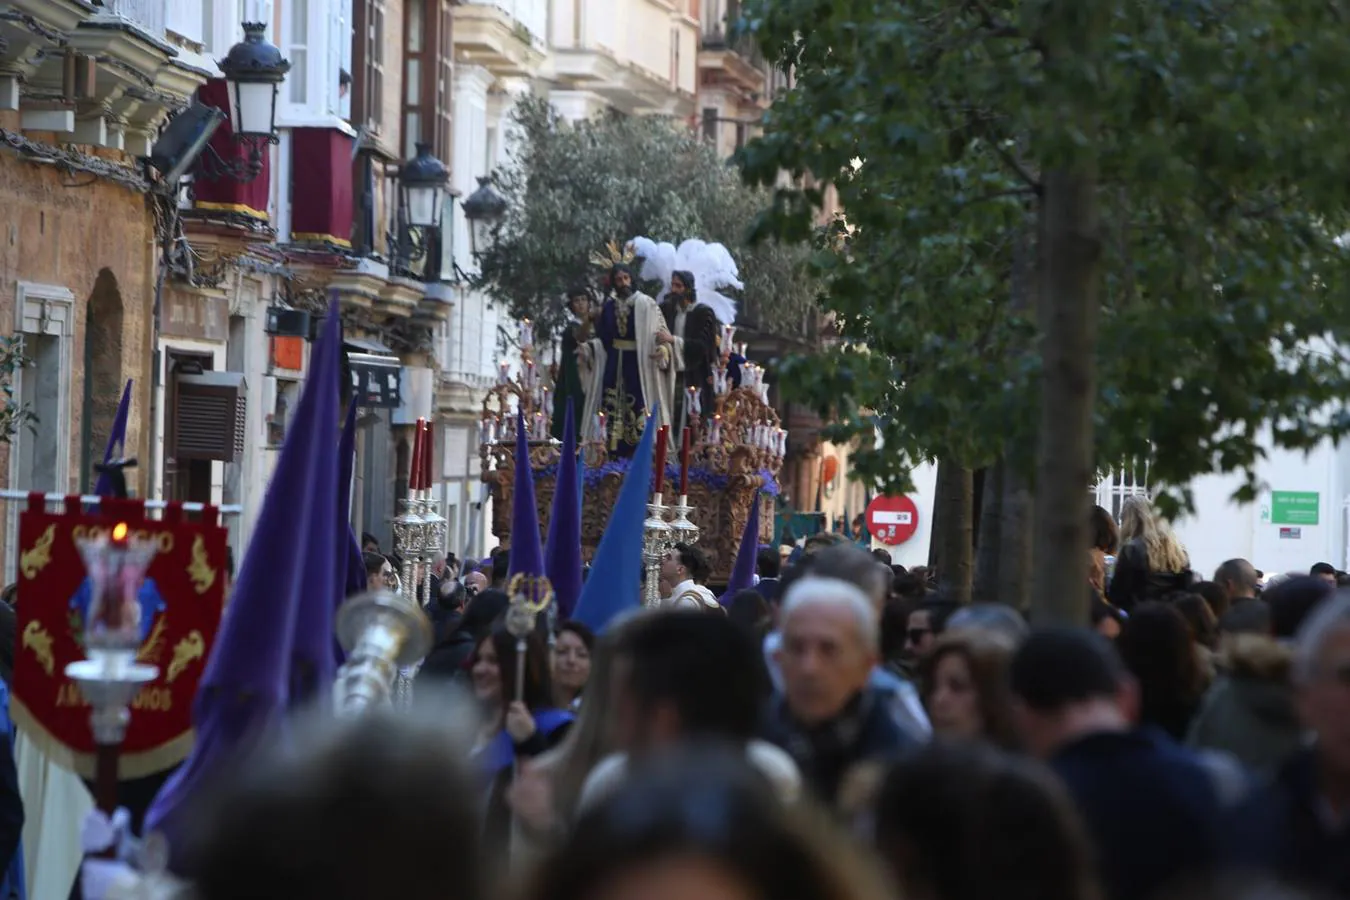 FOTOS: El Prendimiento el Lunes Santo. Semana Santa Cádiz 2018